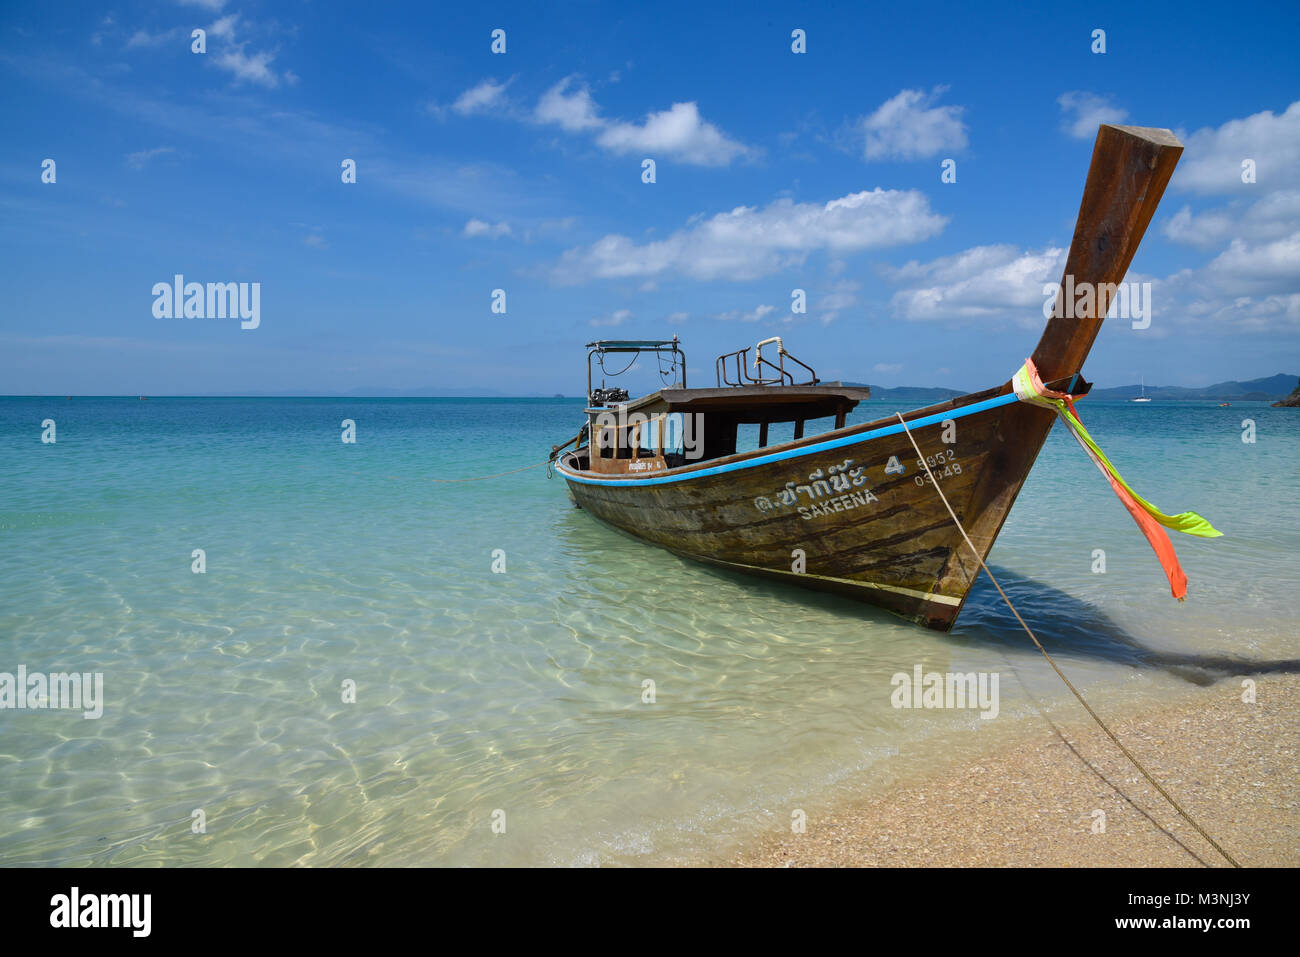 Bateau à longue queue unique ancré sur une plage de sable jaune clair avec belle mer bleu turquoise, bleu ciel, nuage blanc en Thaïlande Banque D'Images